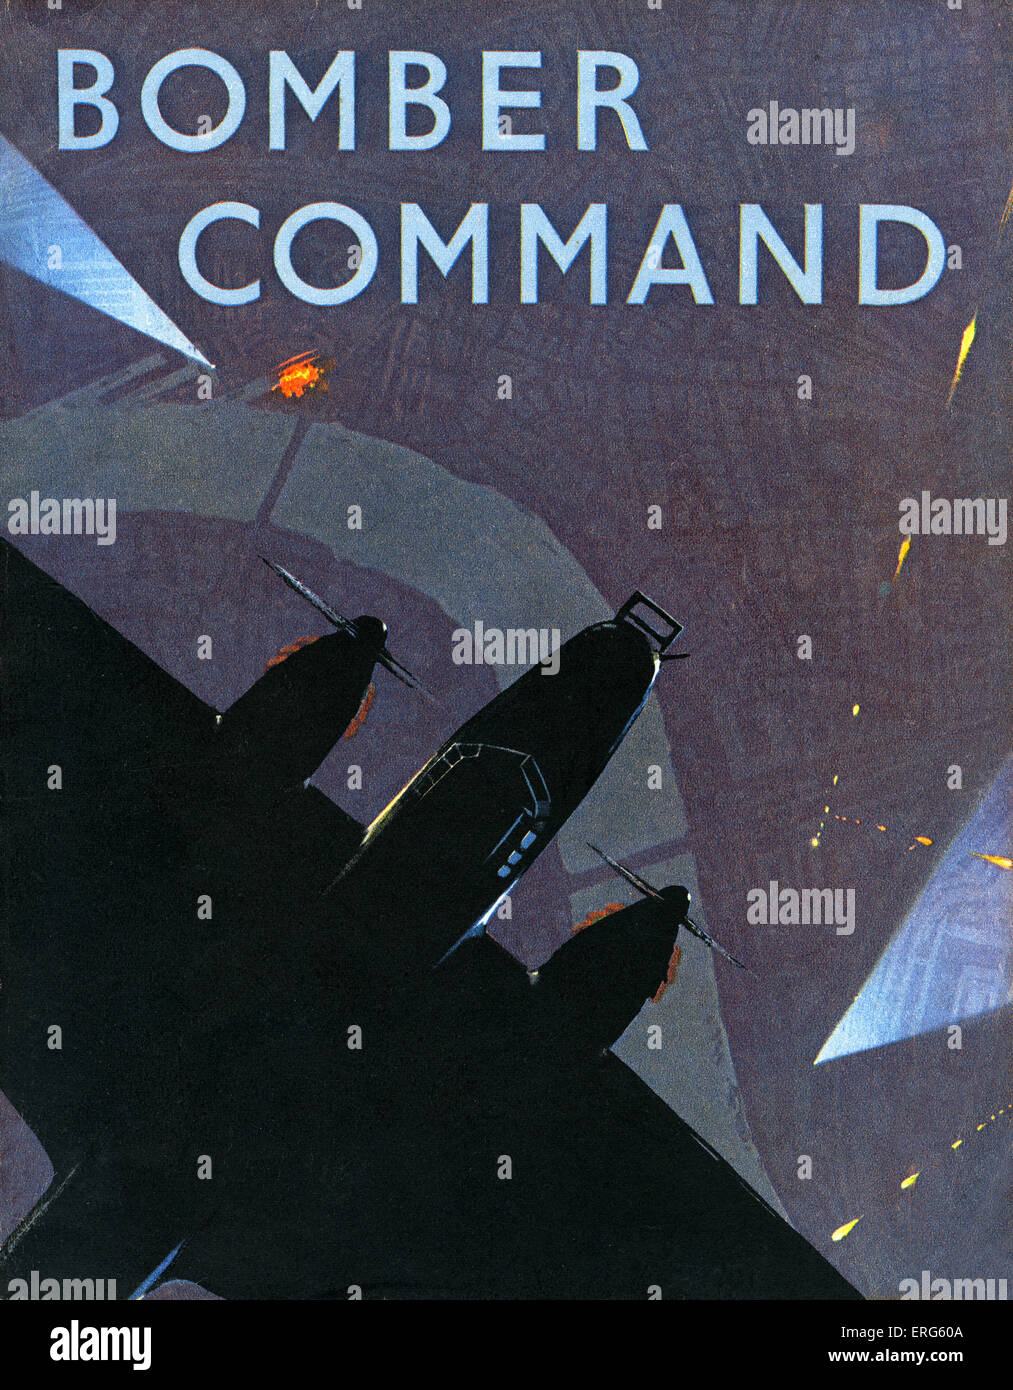 Le Bomber Command - World War 2 livre de l'information. Capot avant. Sous-titré : "Le ministère de l'air compte de Bomber Command offensive de l' Banque D'Images